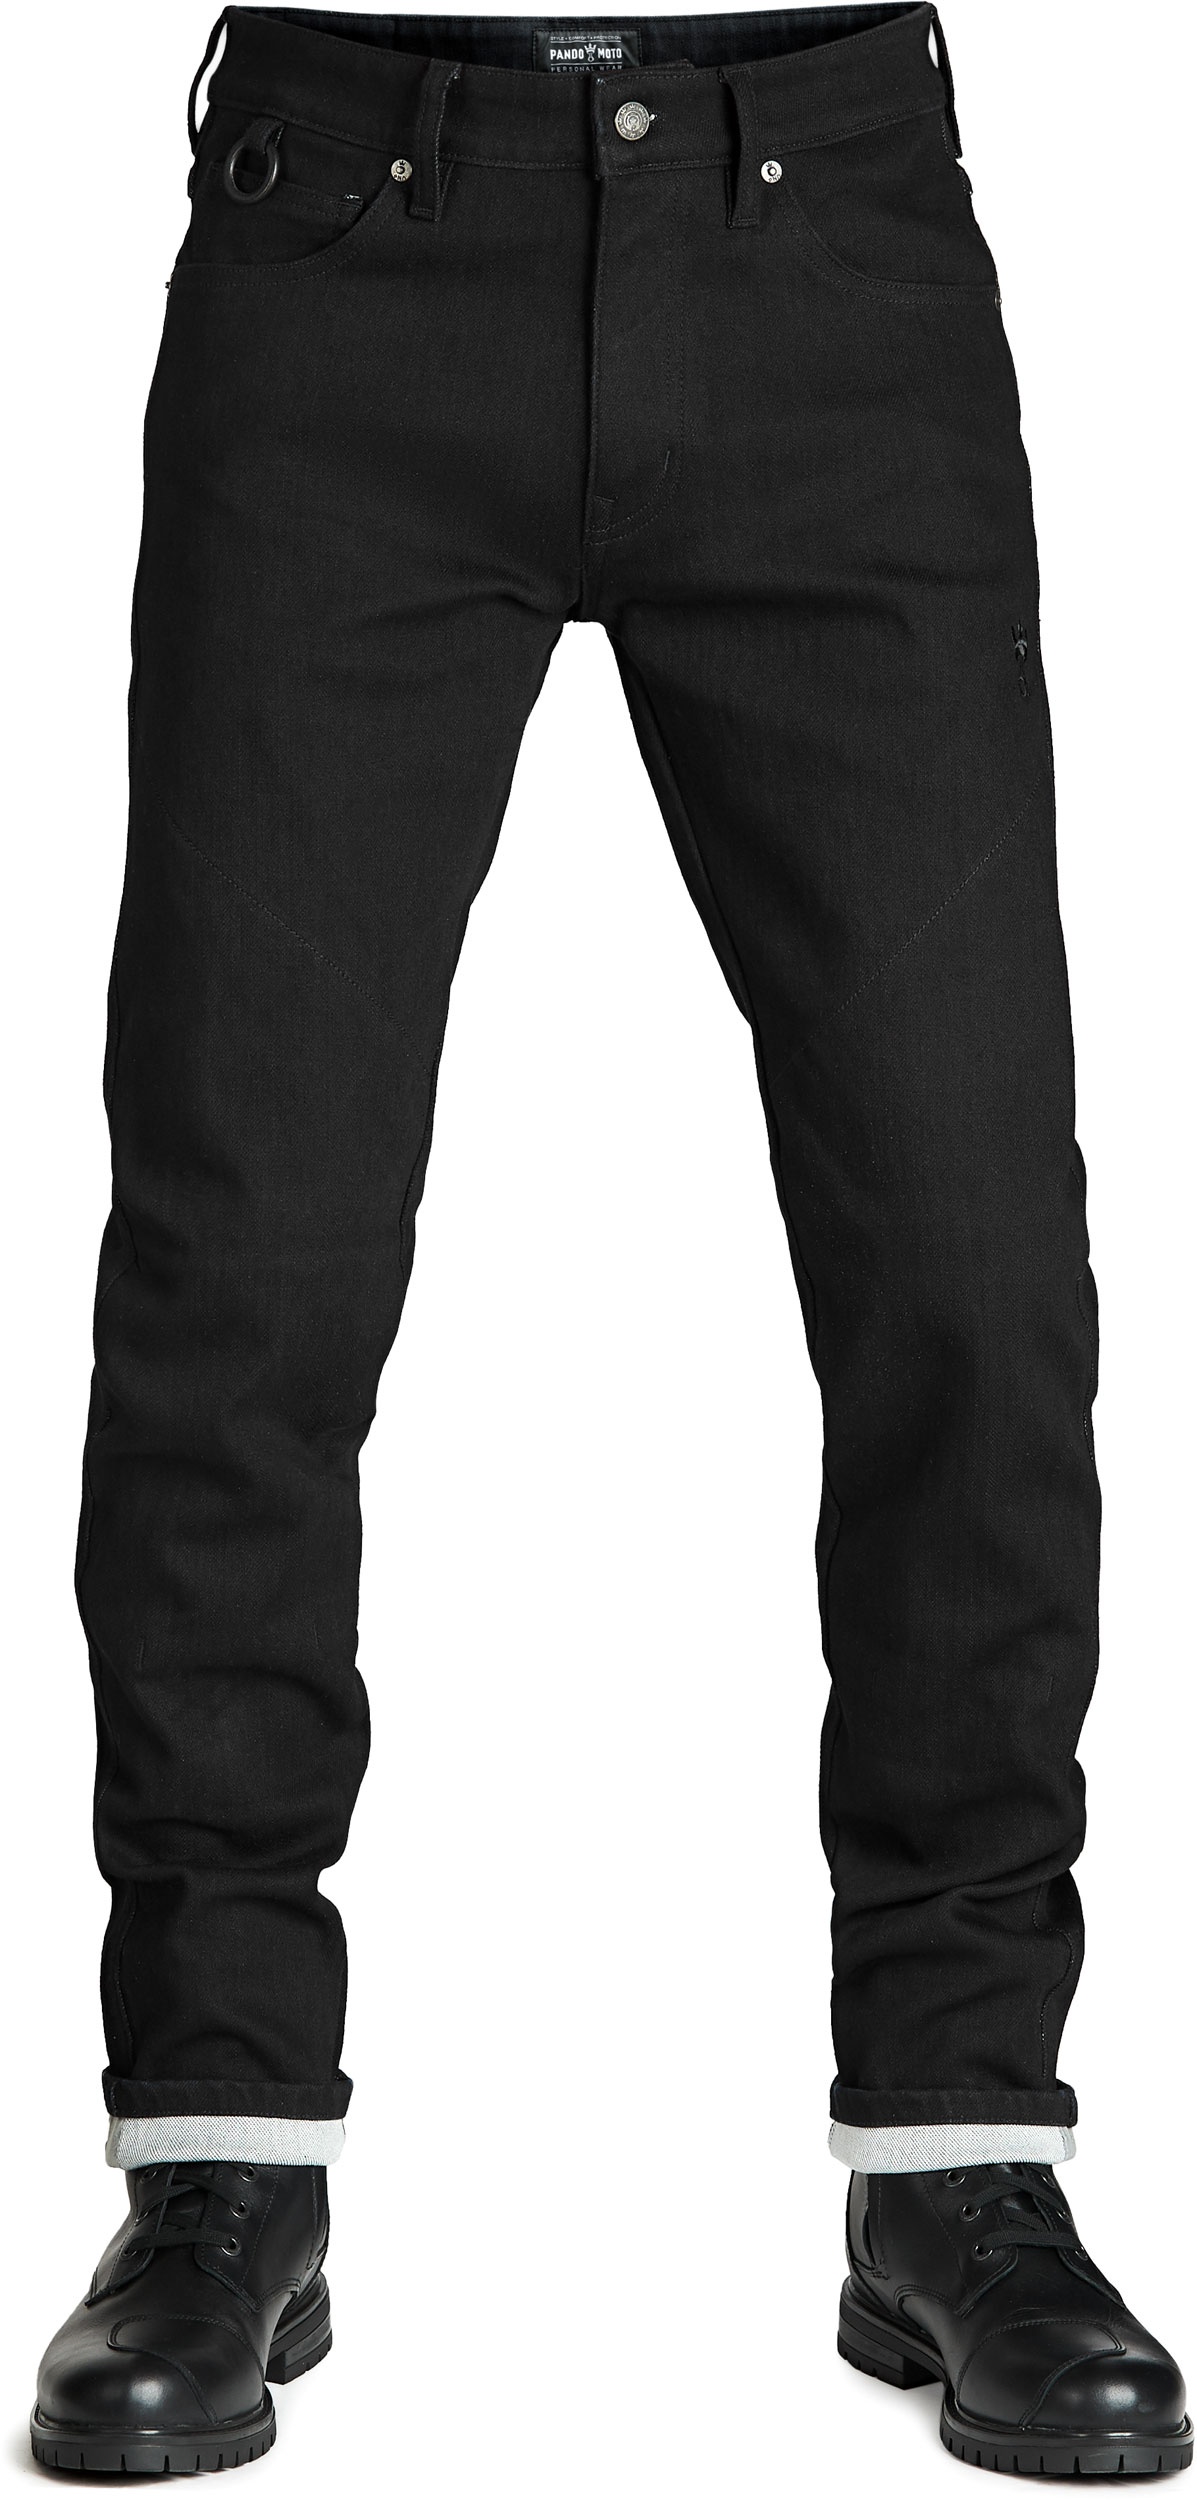 Pando Moto Steel Black 9, Jeans - Schwarz - W32/L34